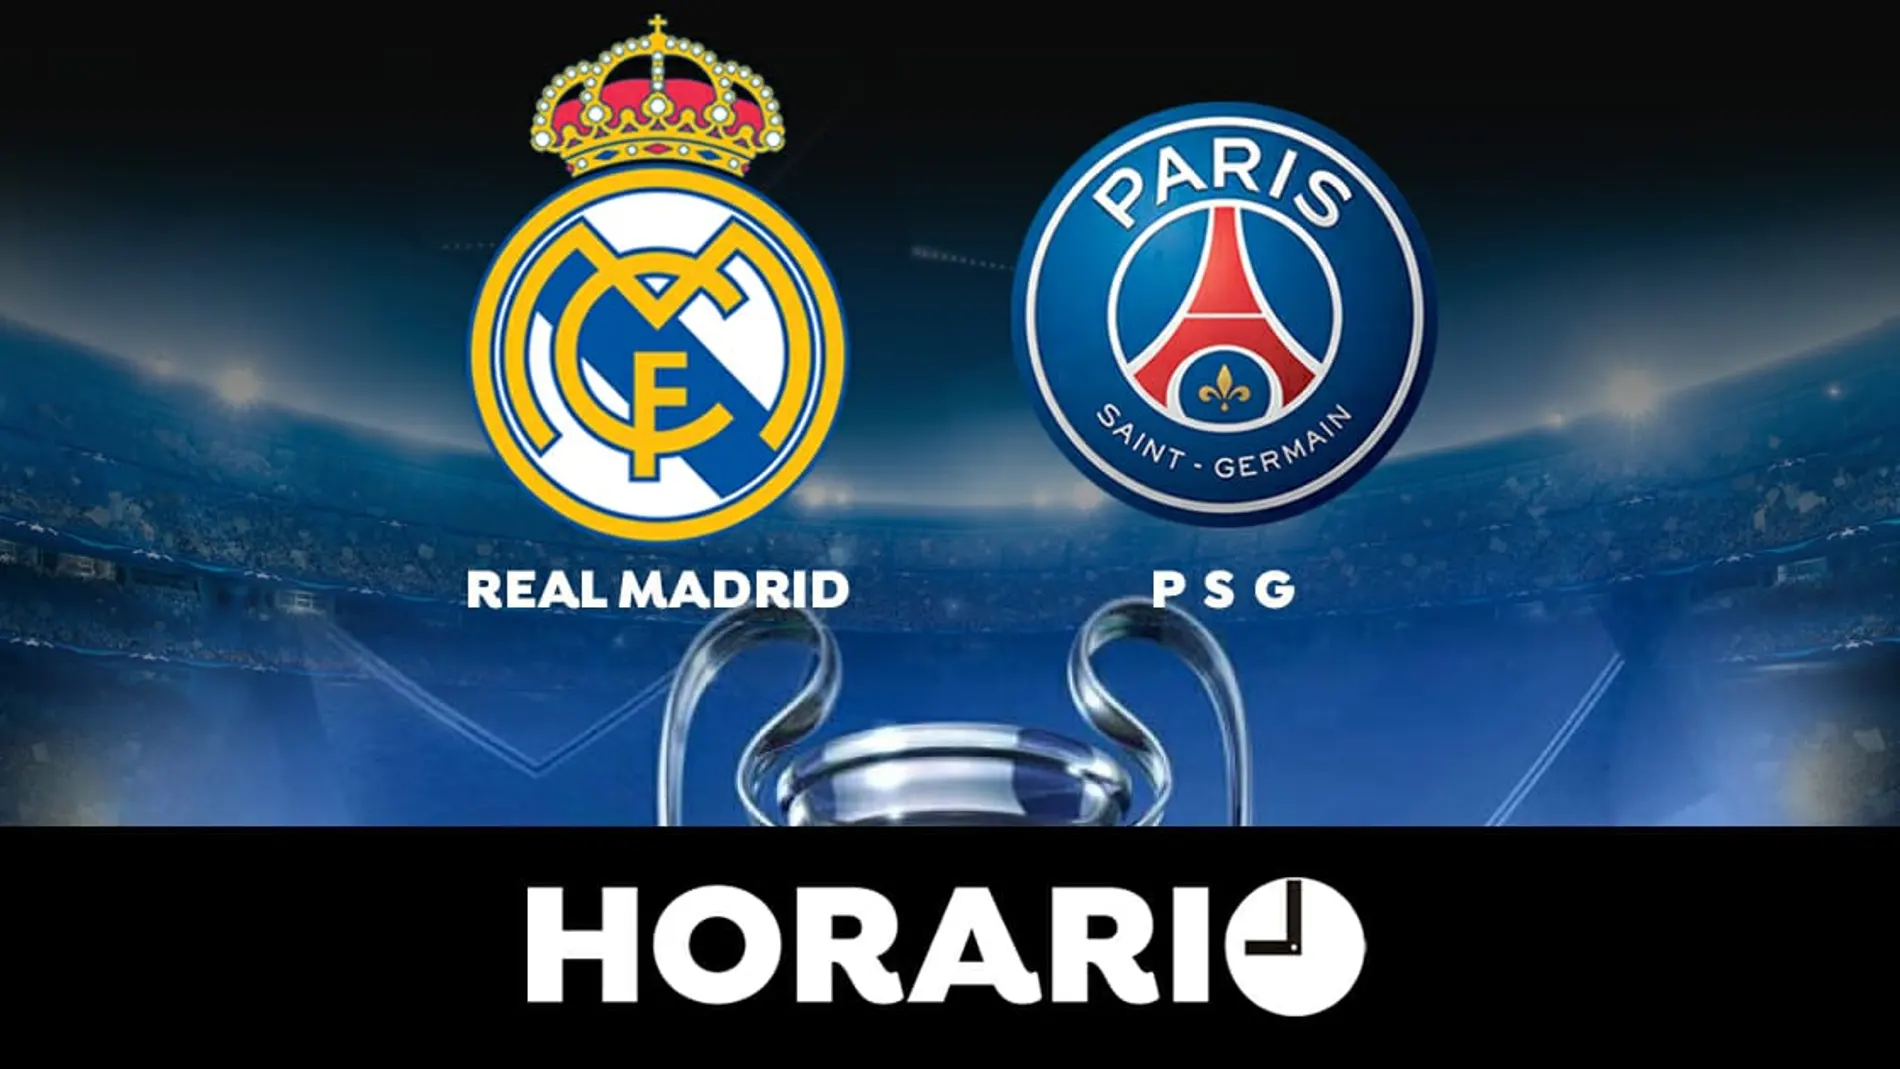 Real Madrid - PSG: Horario y dónde ver el partido de la Champions League 